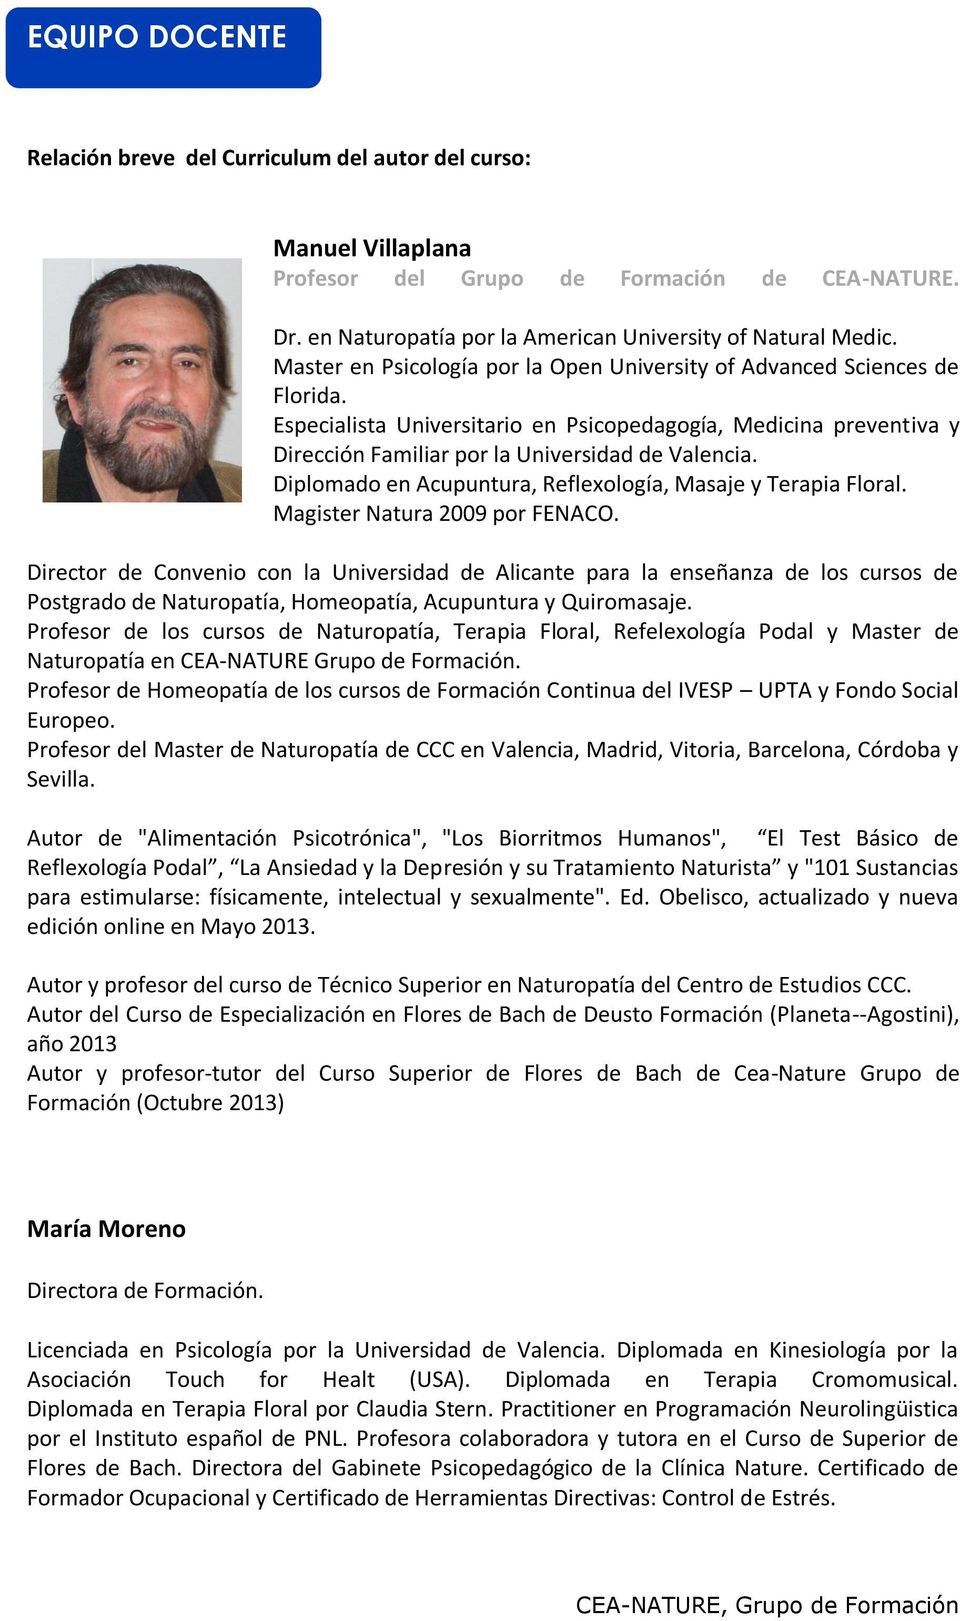 Diplomado en Acupuntura, Reflexología, Masaje y Terapia Floral. Magister Natura 2009 por FENACO.